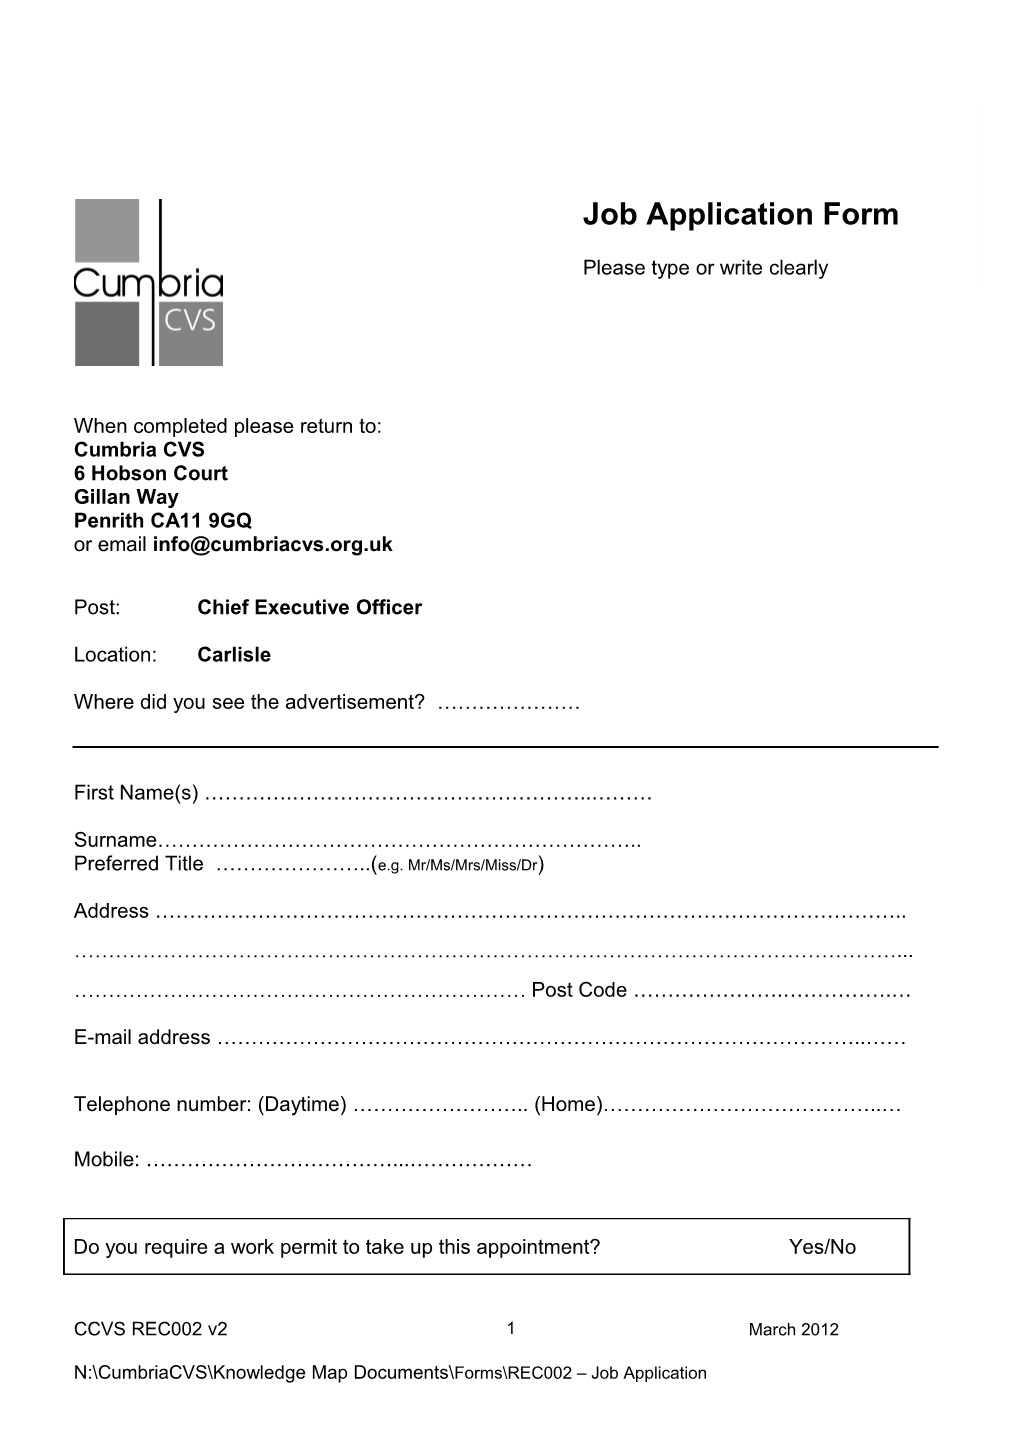 Job Application Form s14